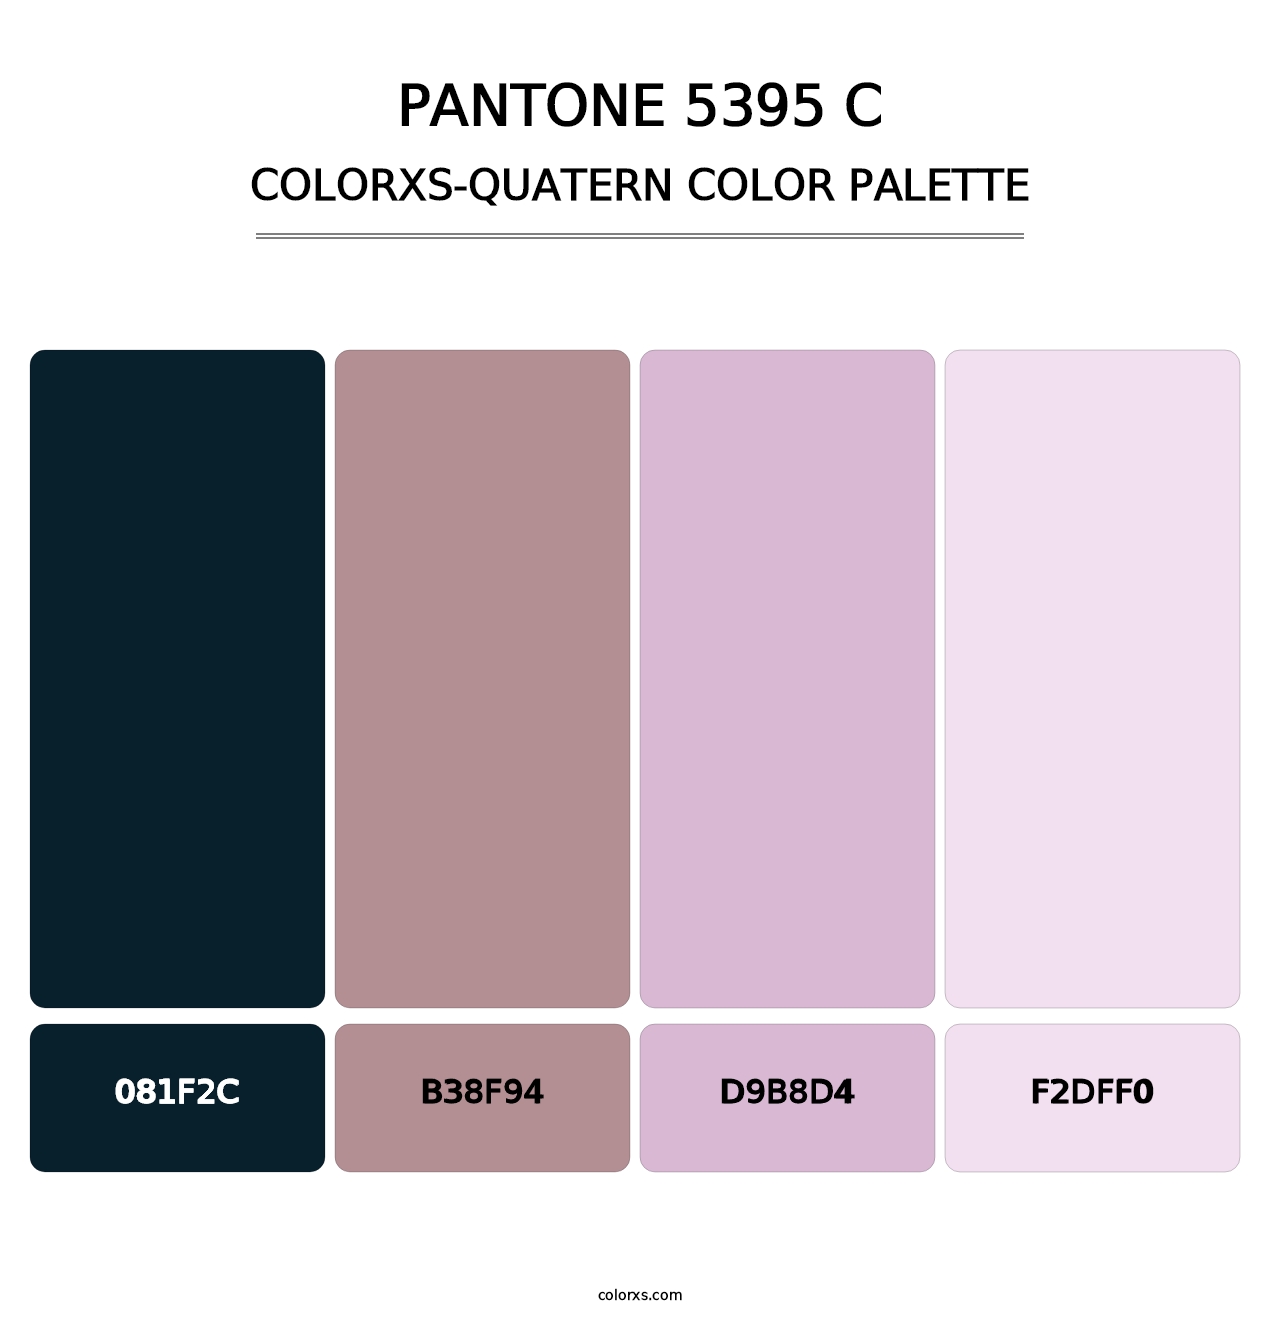 PANTONE 5395 C - Colorxs Quatern Palette